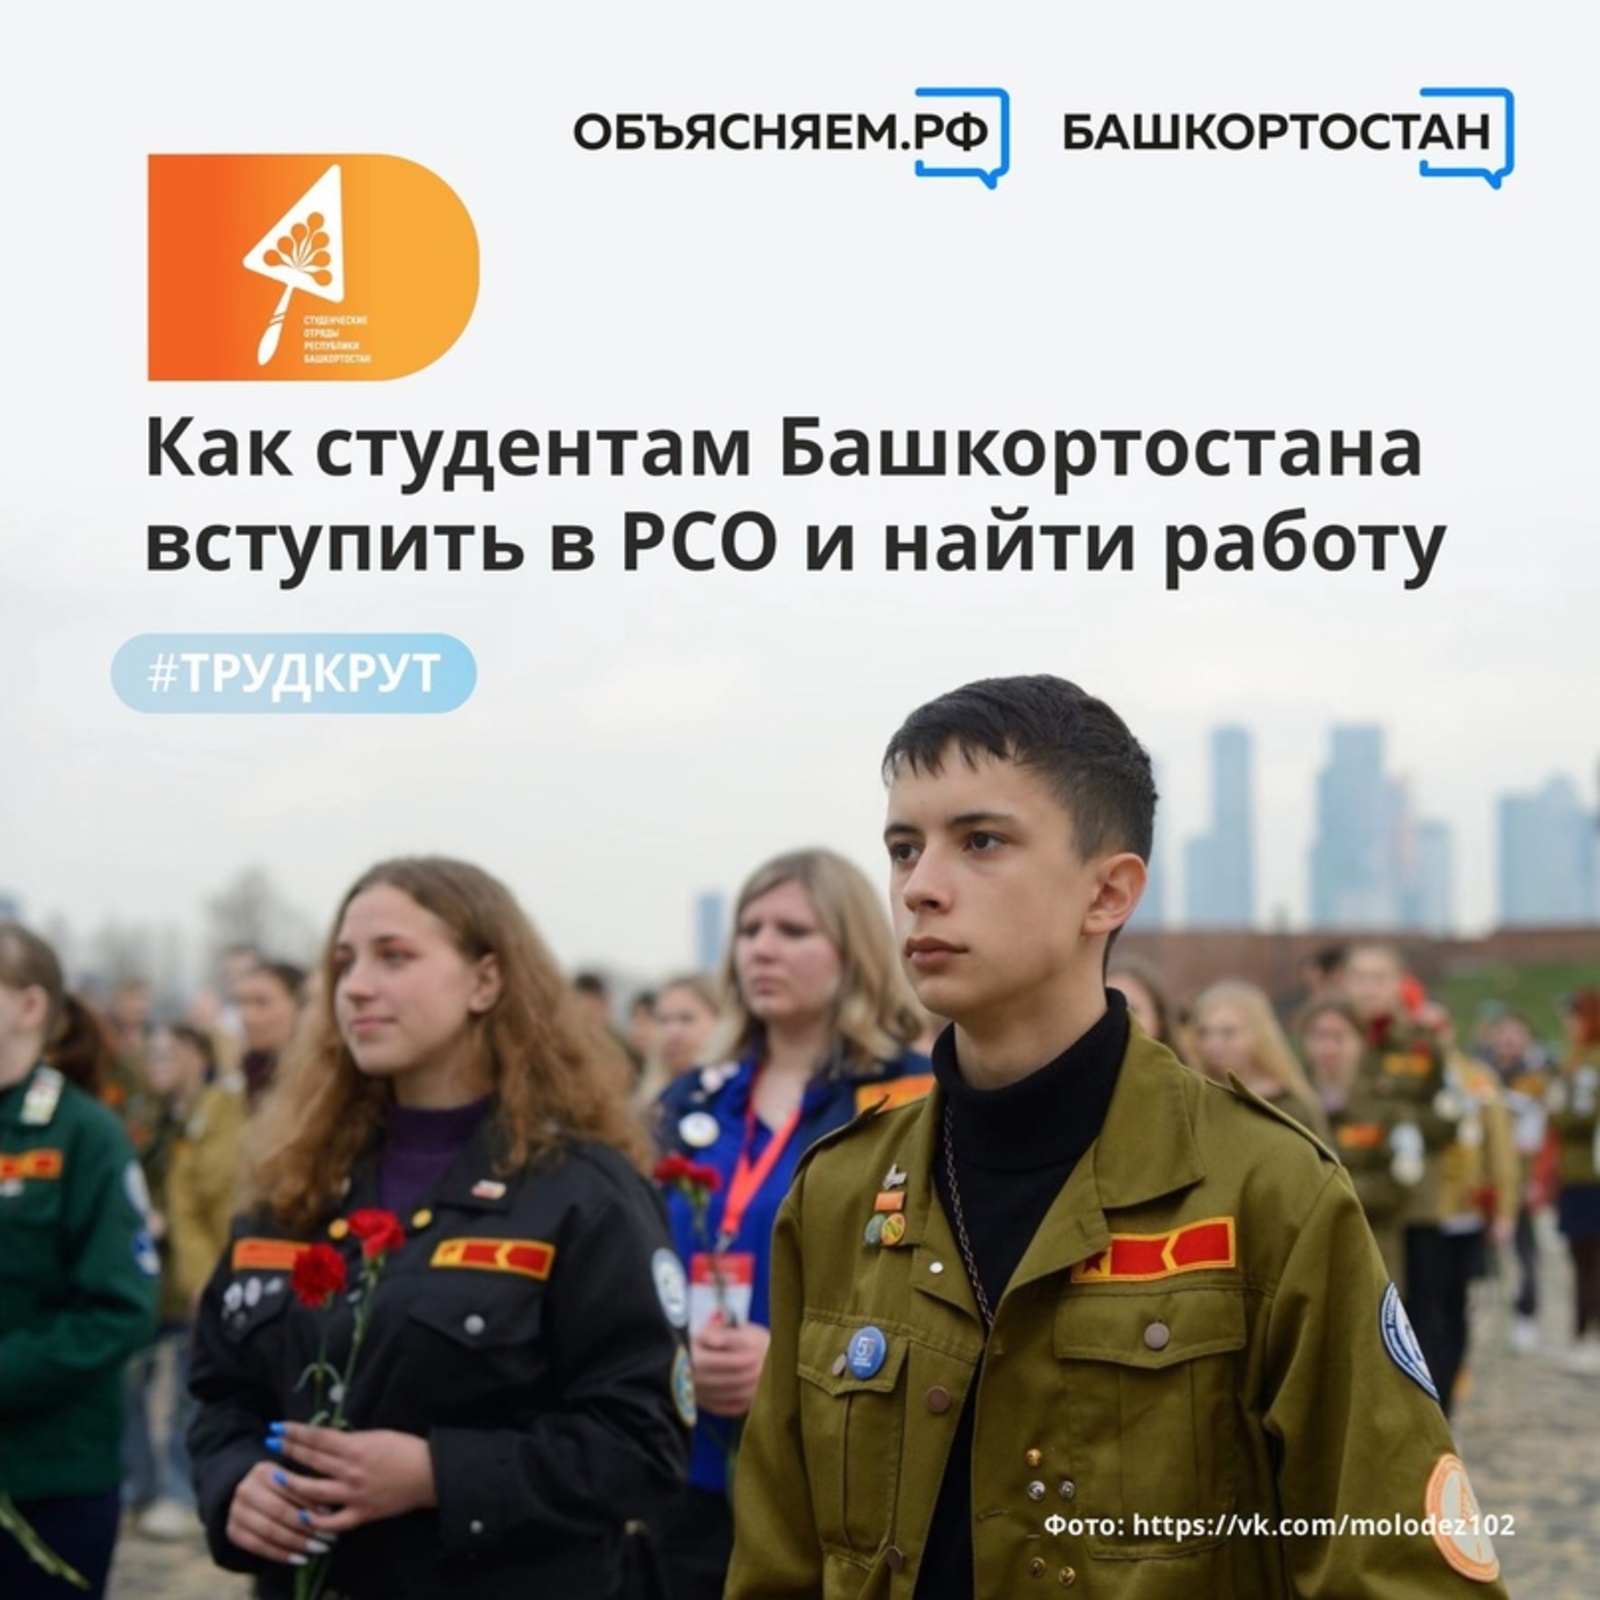 Студенты из Башкирии могут найти официальную работу, вступив в ряды Российских студенческих отрядов (РСО).